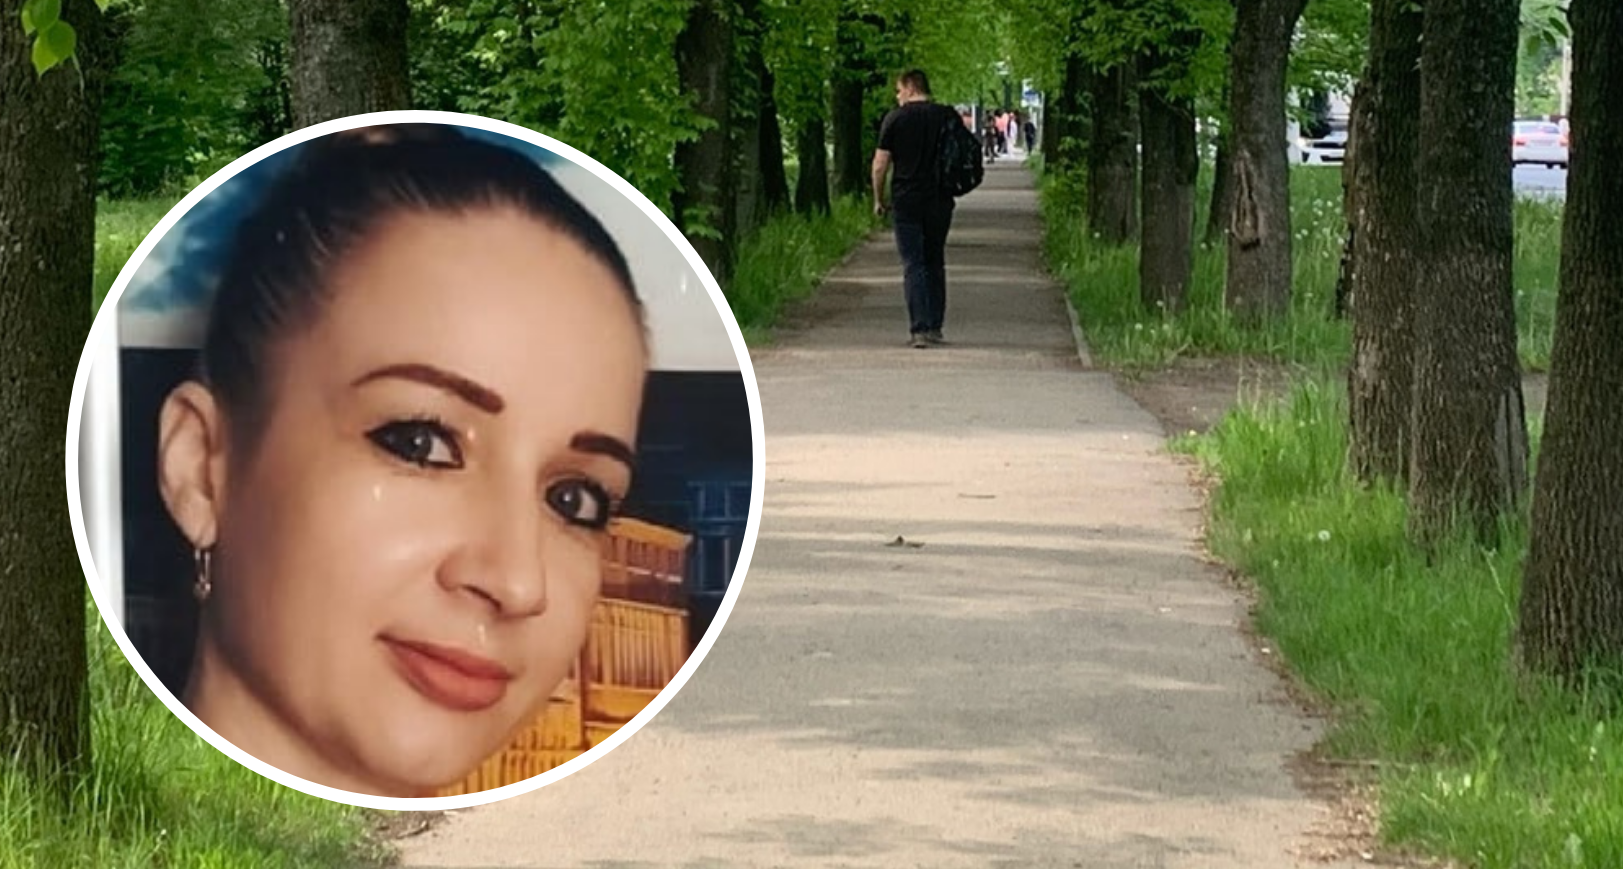 «Отдала все золото и ушла в секту»: подробности странного исчезновения мамы в Рыбинске